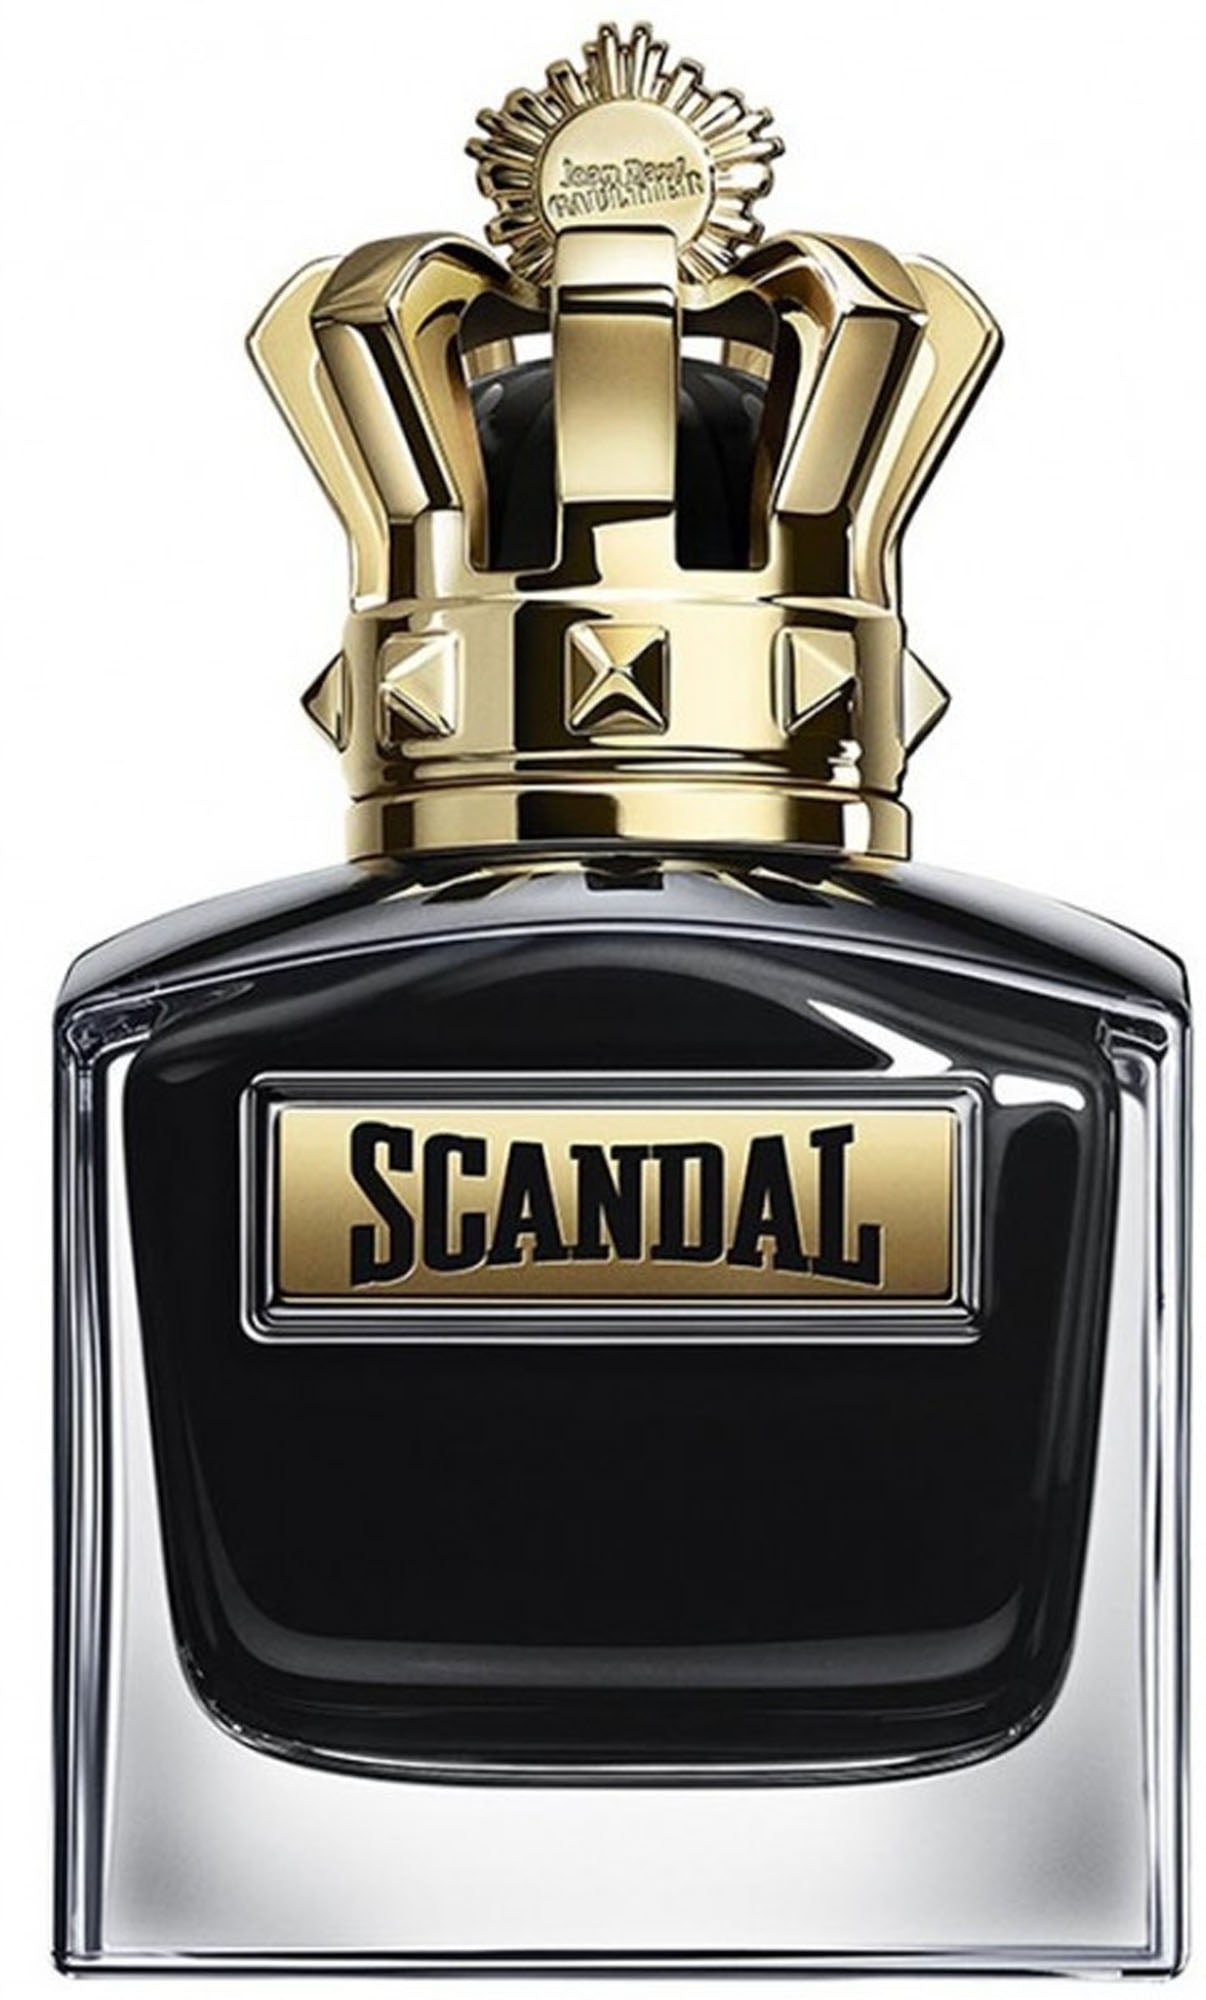 scandal le parfum him